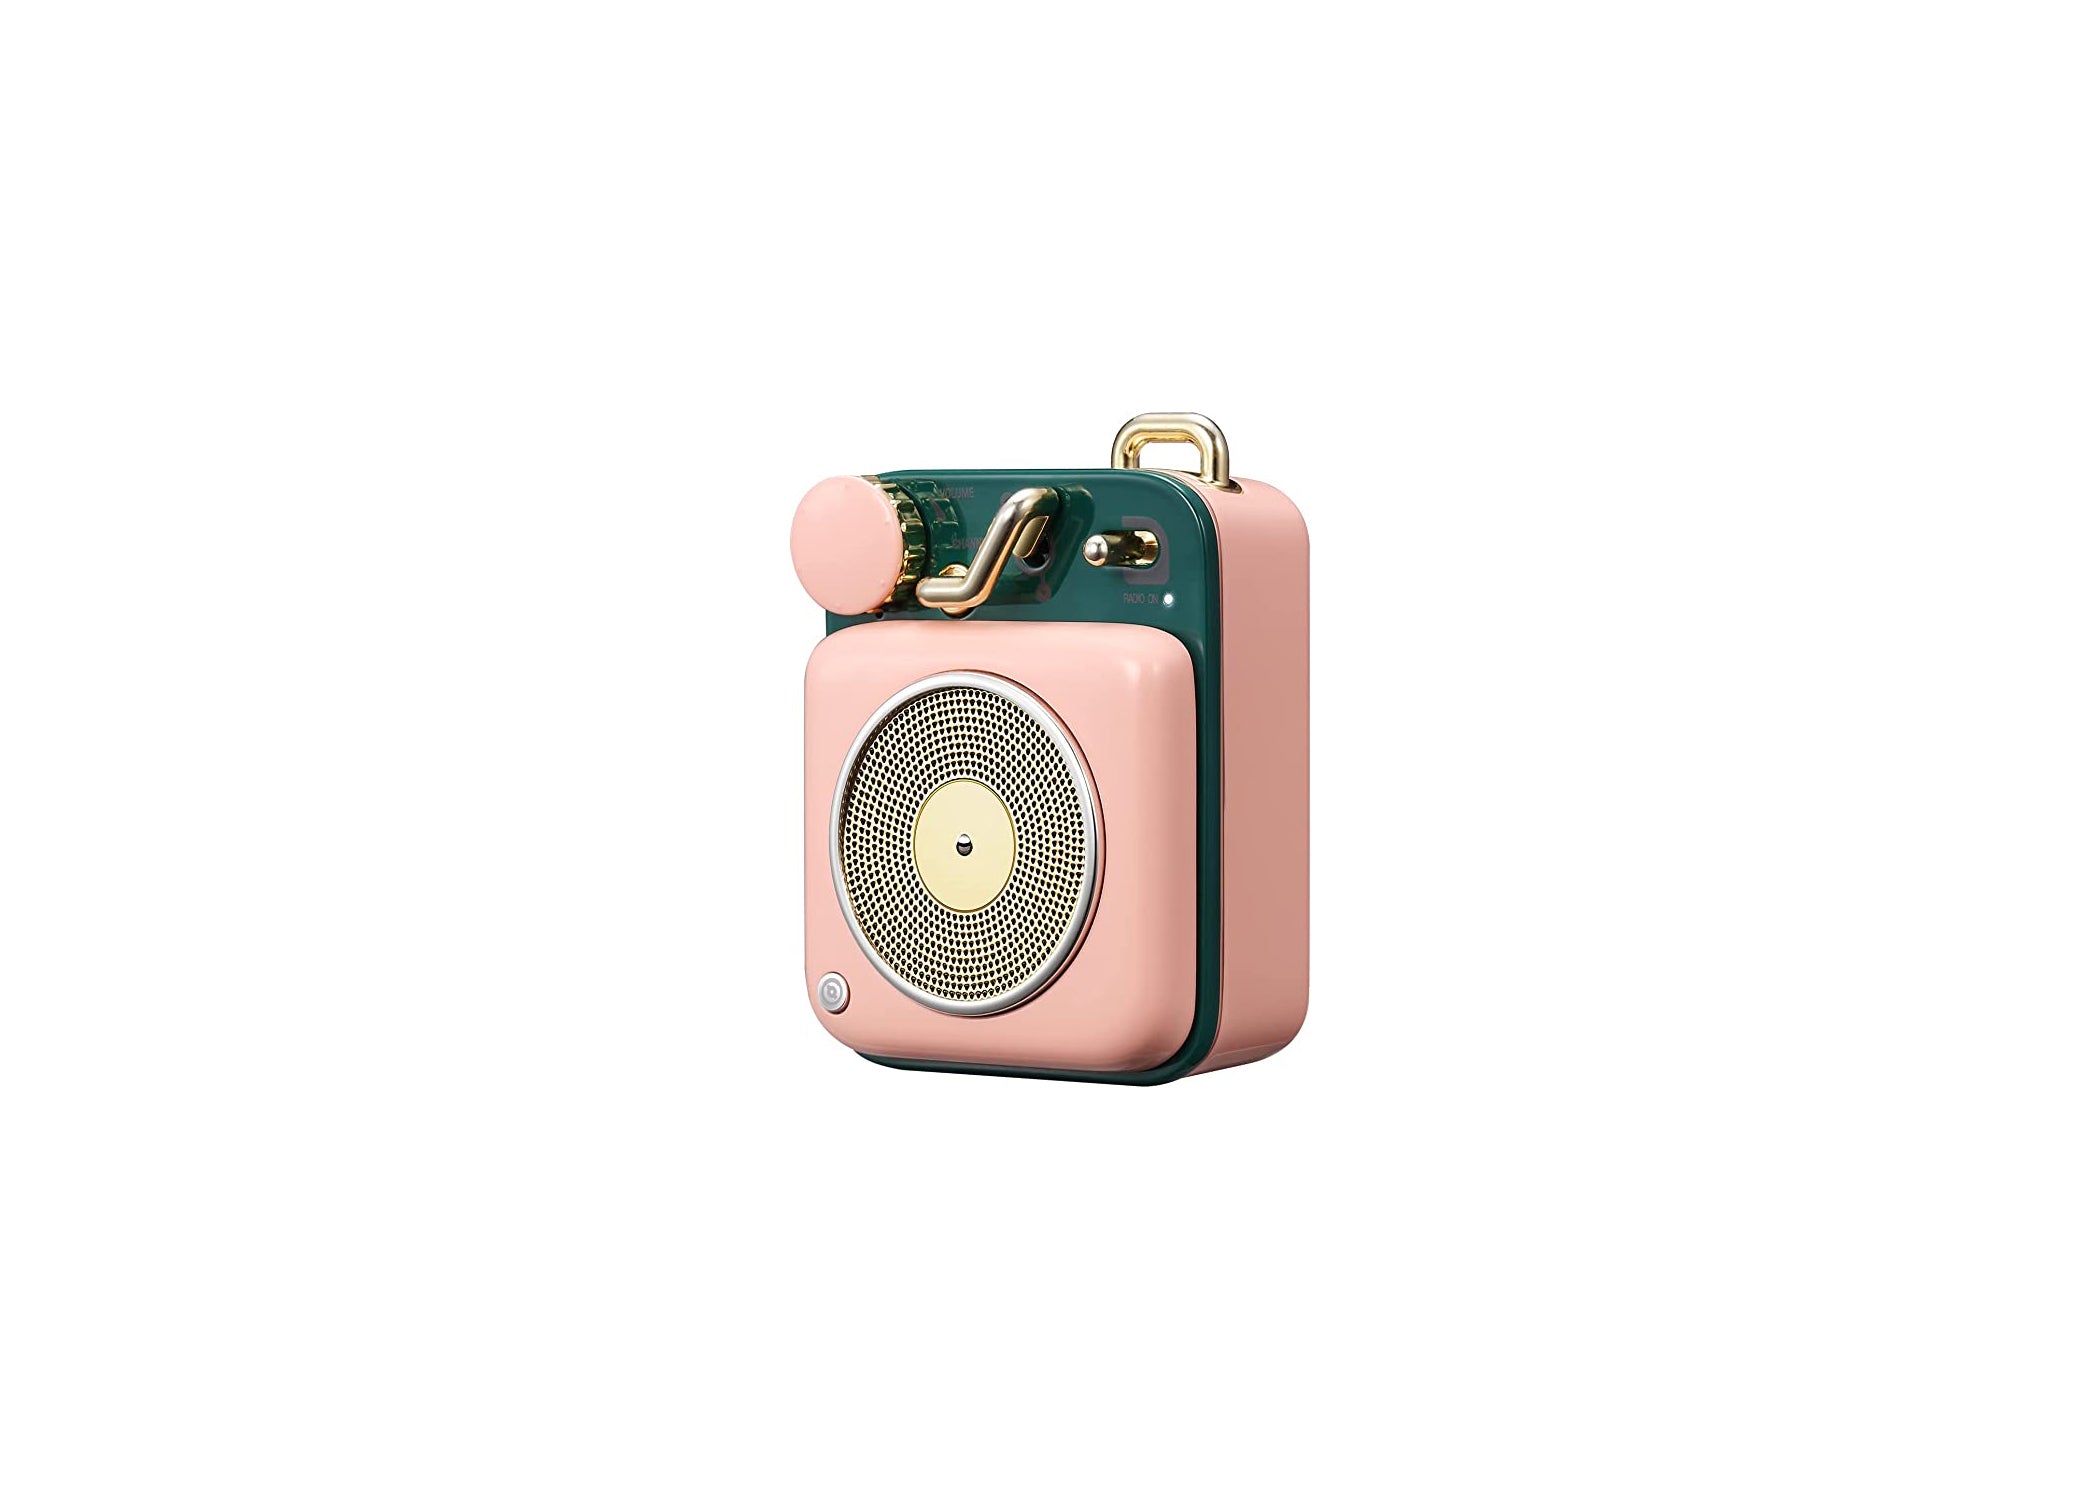 Mini Bluetooth Speaker, Vintage Radio with Old Fashioned